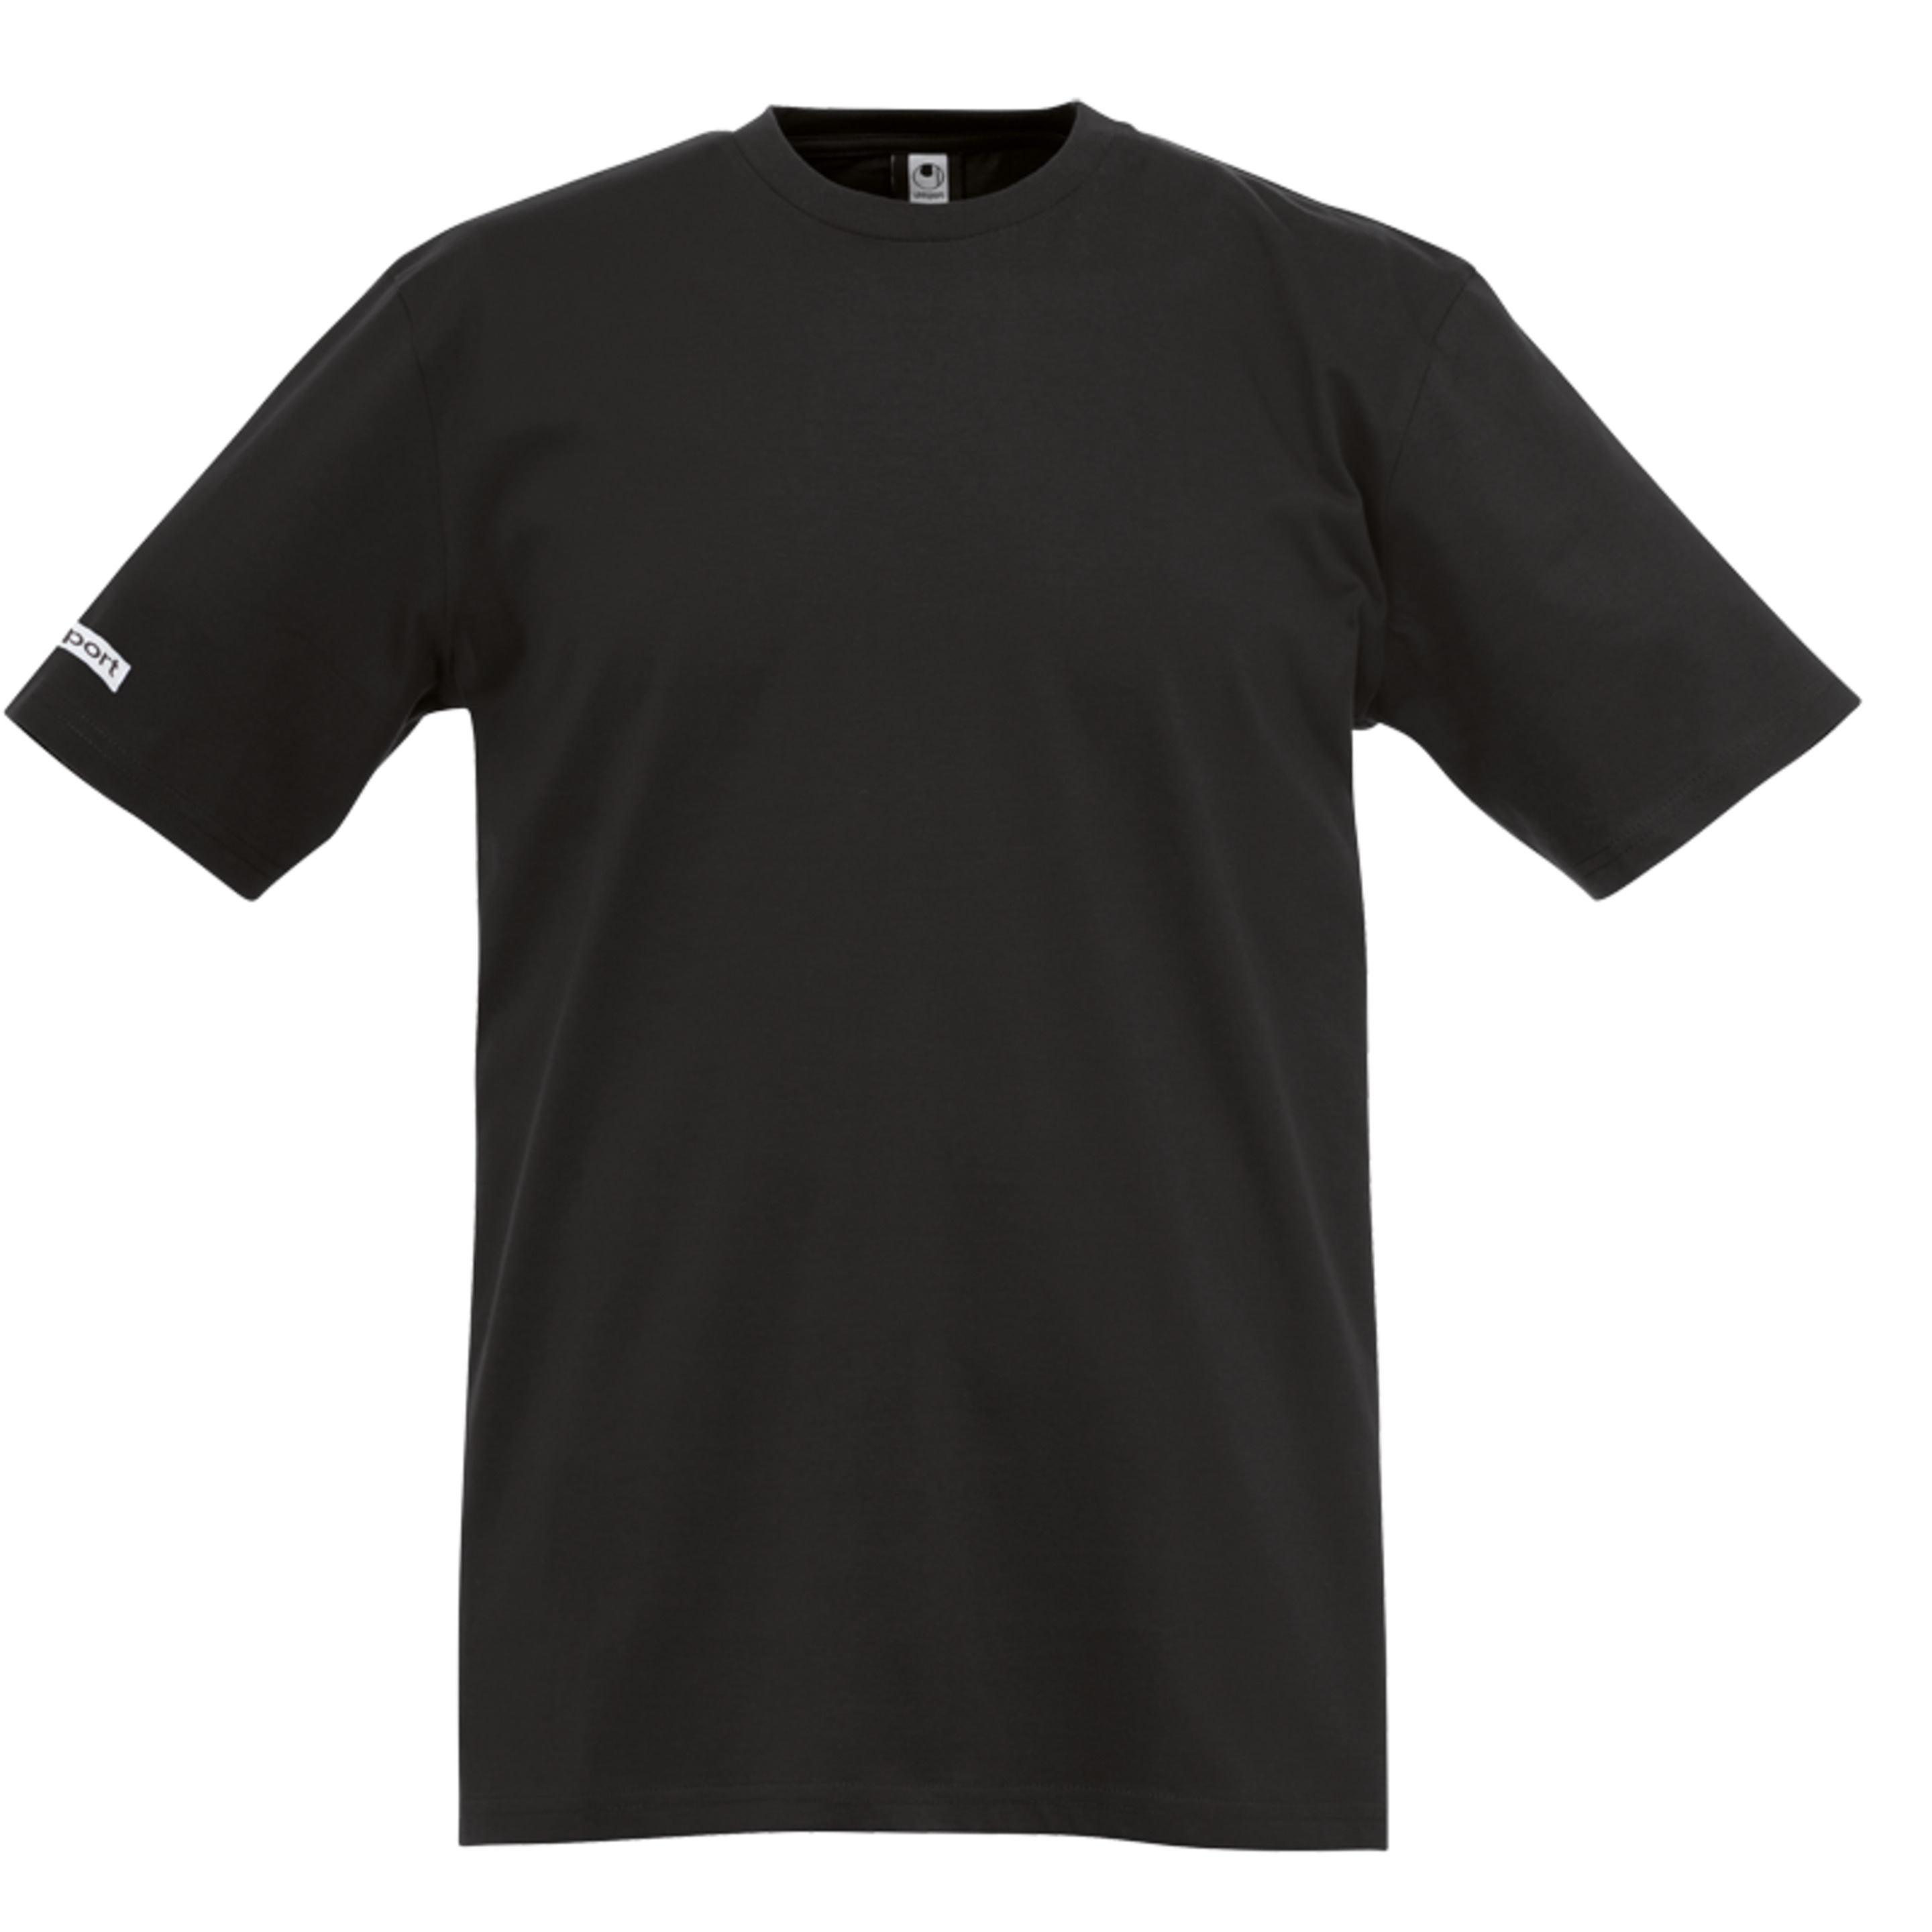 Uhlsport Team Camiseta Negro Uhlsport - negro - 